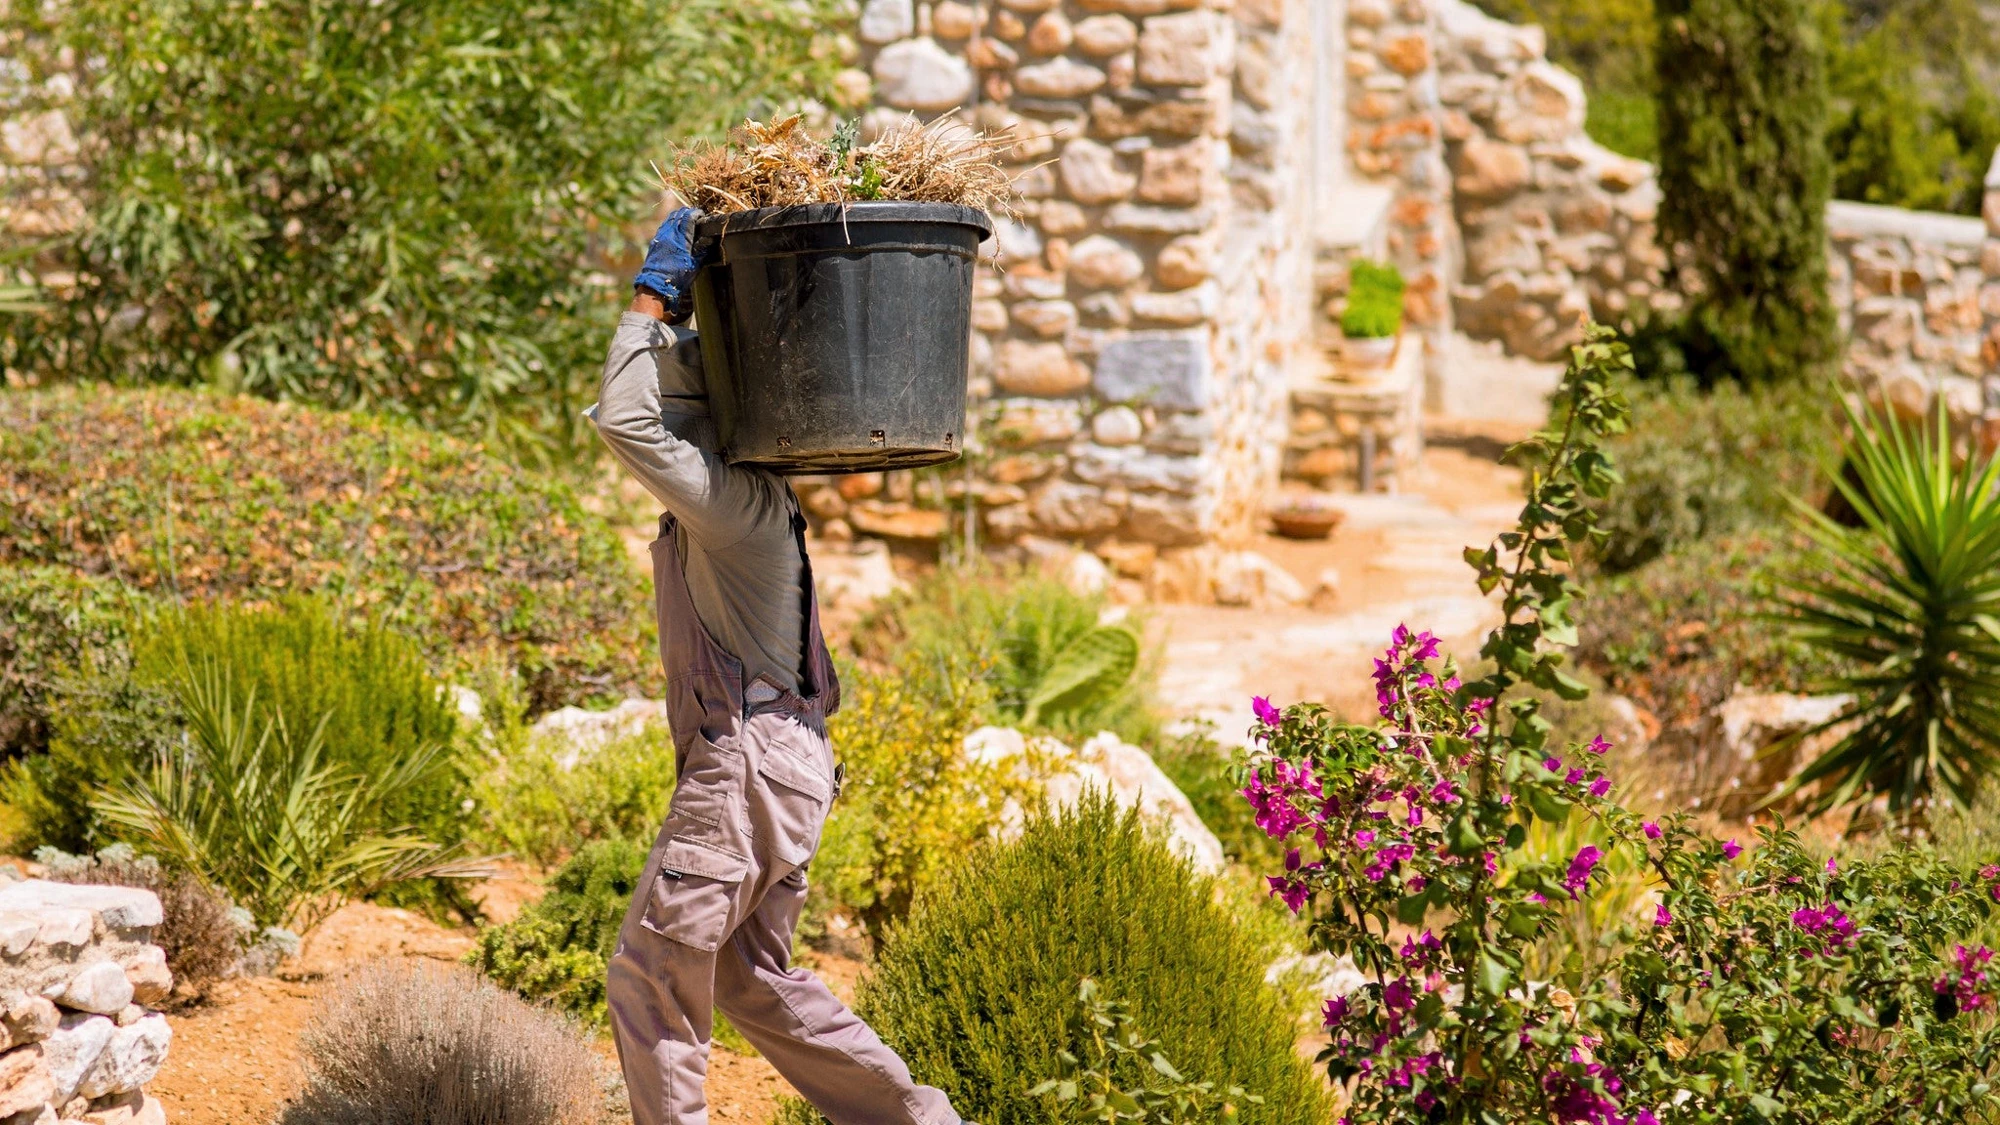 A worker in a garden in Greece